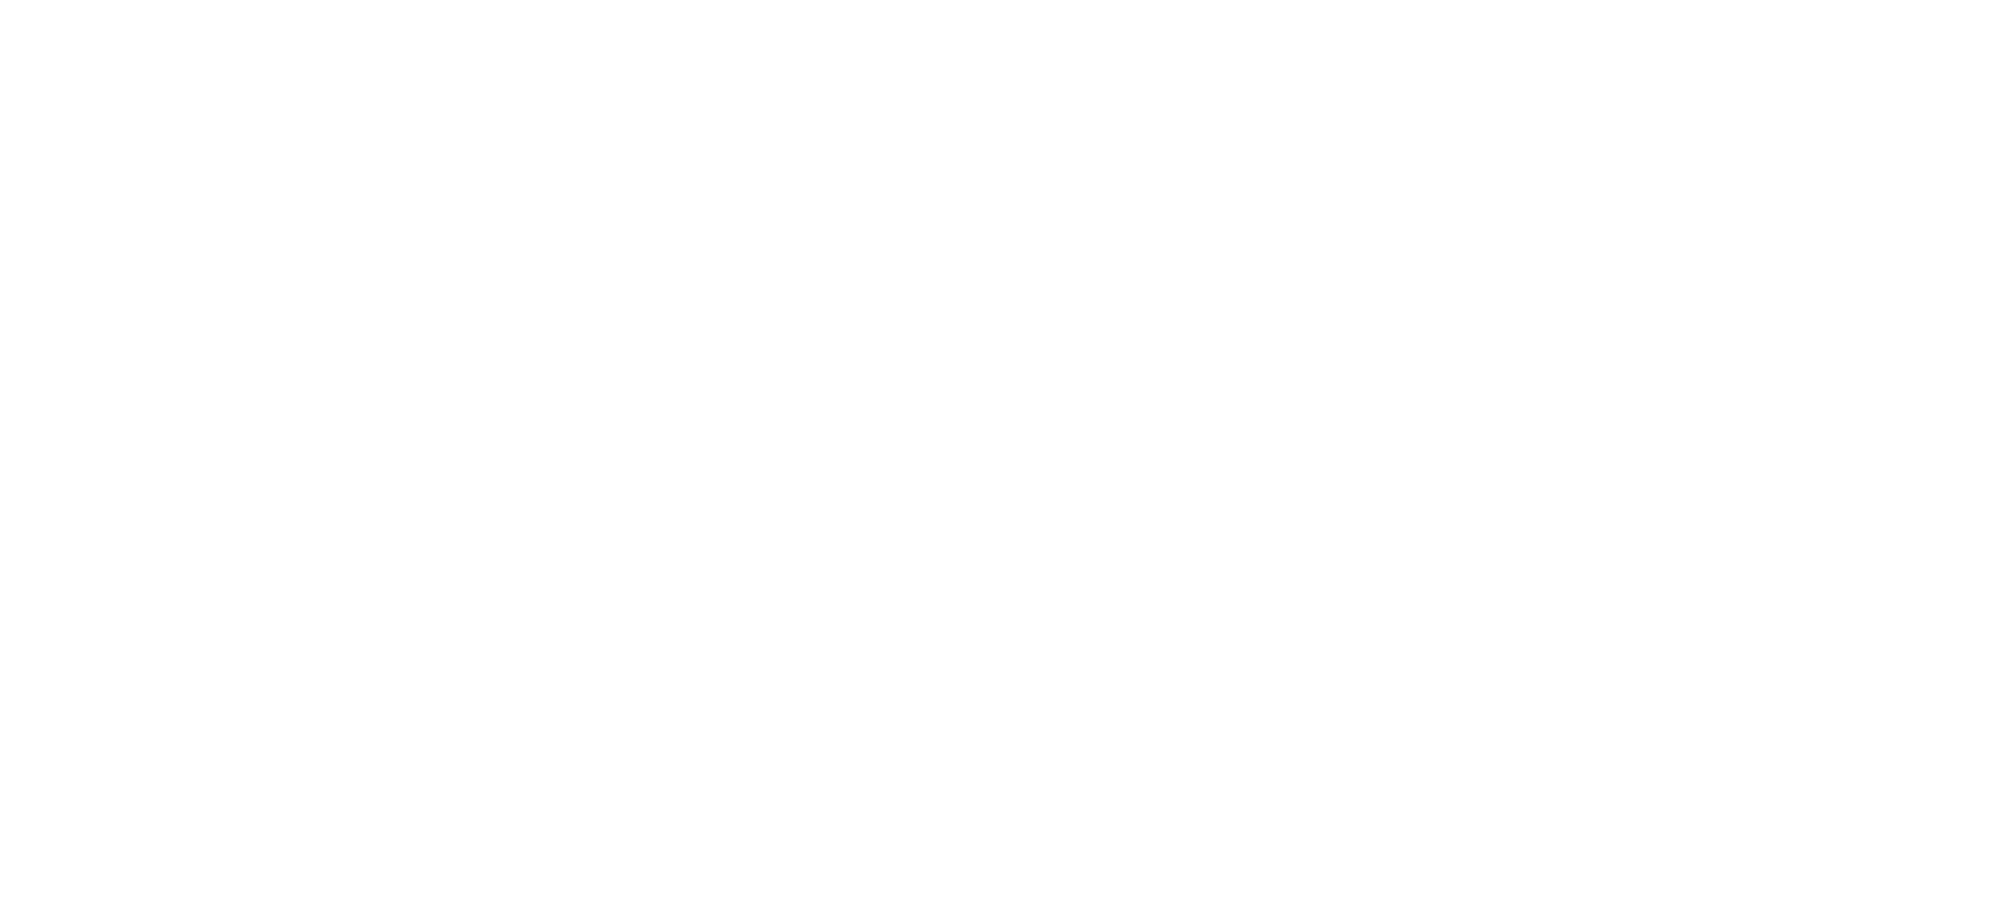 Nuru Fantasy logo